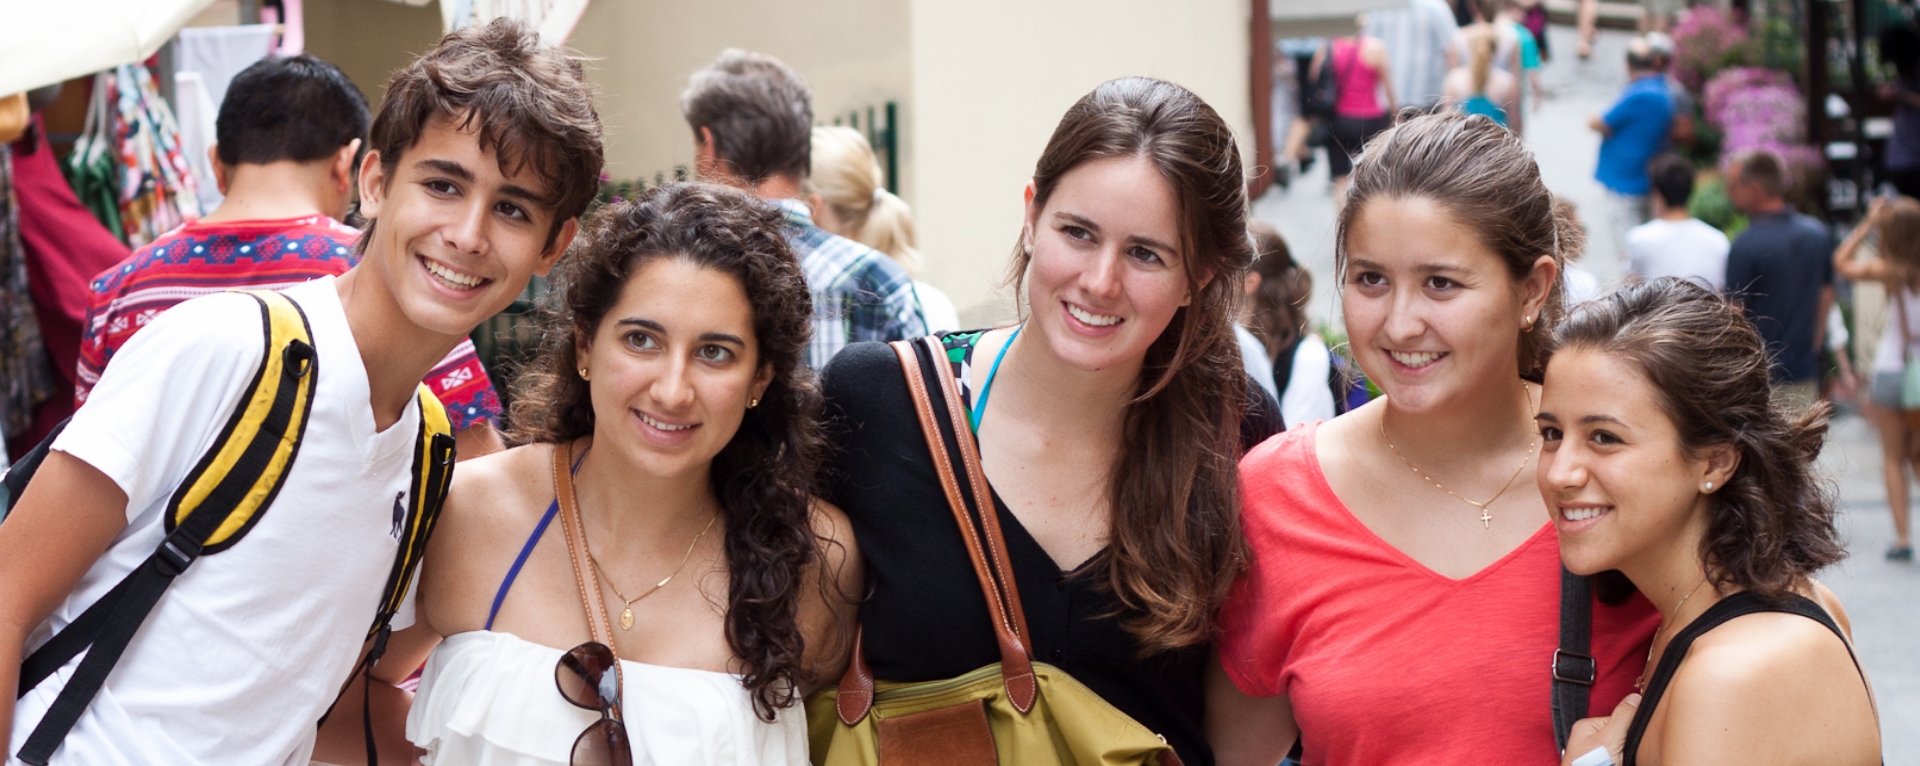 Gruppe ausländischer Studenten lächelt für ein Foto